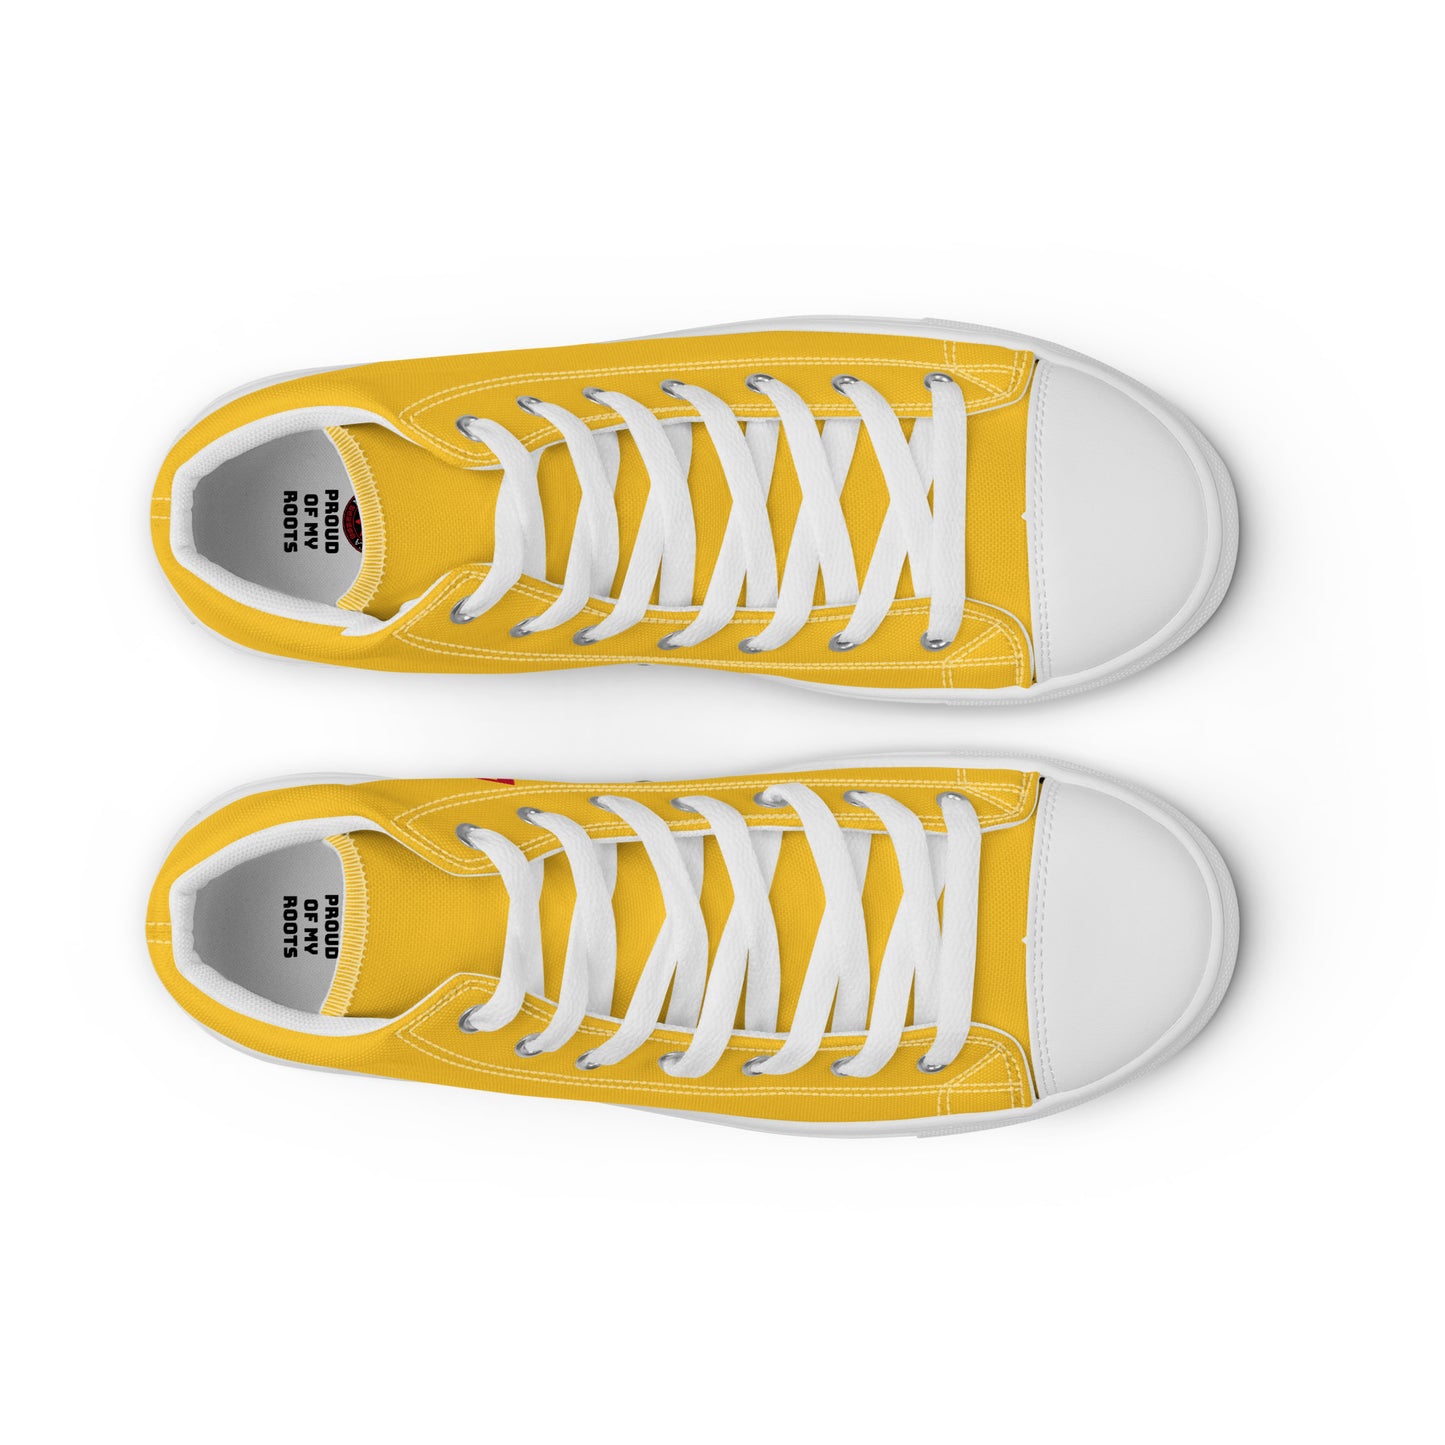 Bolivia - Women - Yellow - High top shoes